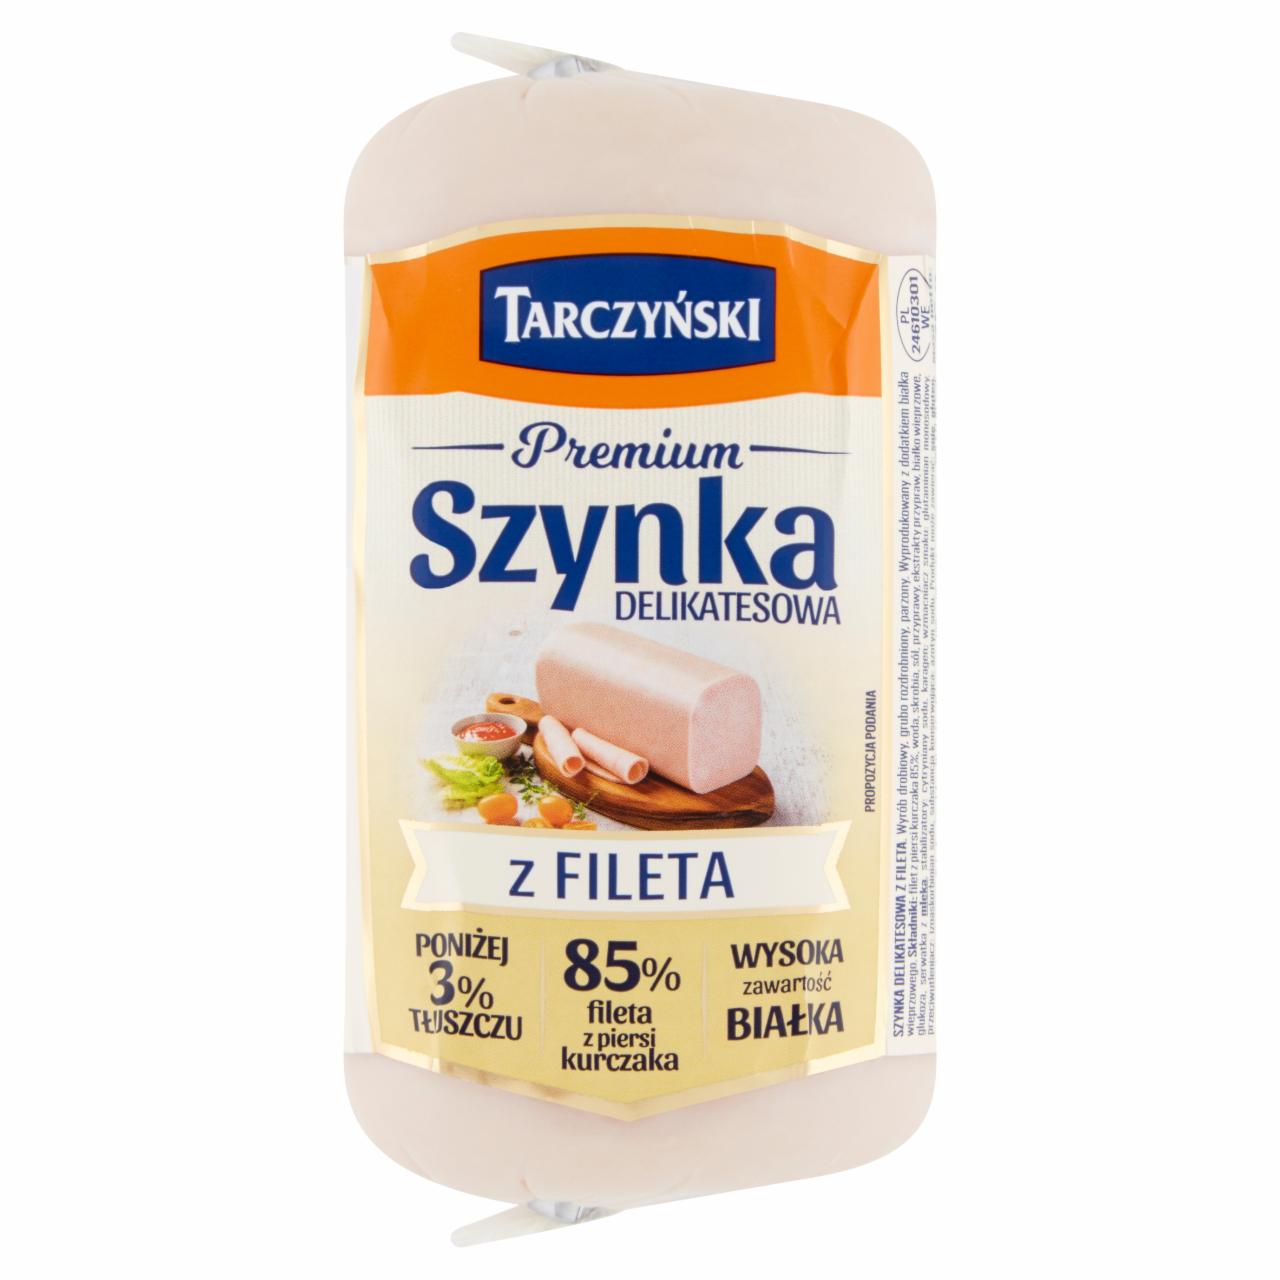 Zdjęcia - Tarczyński Premium Szynka delikatesowa z fileta 375 g